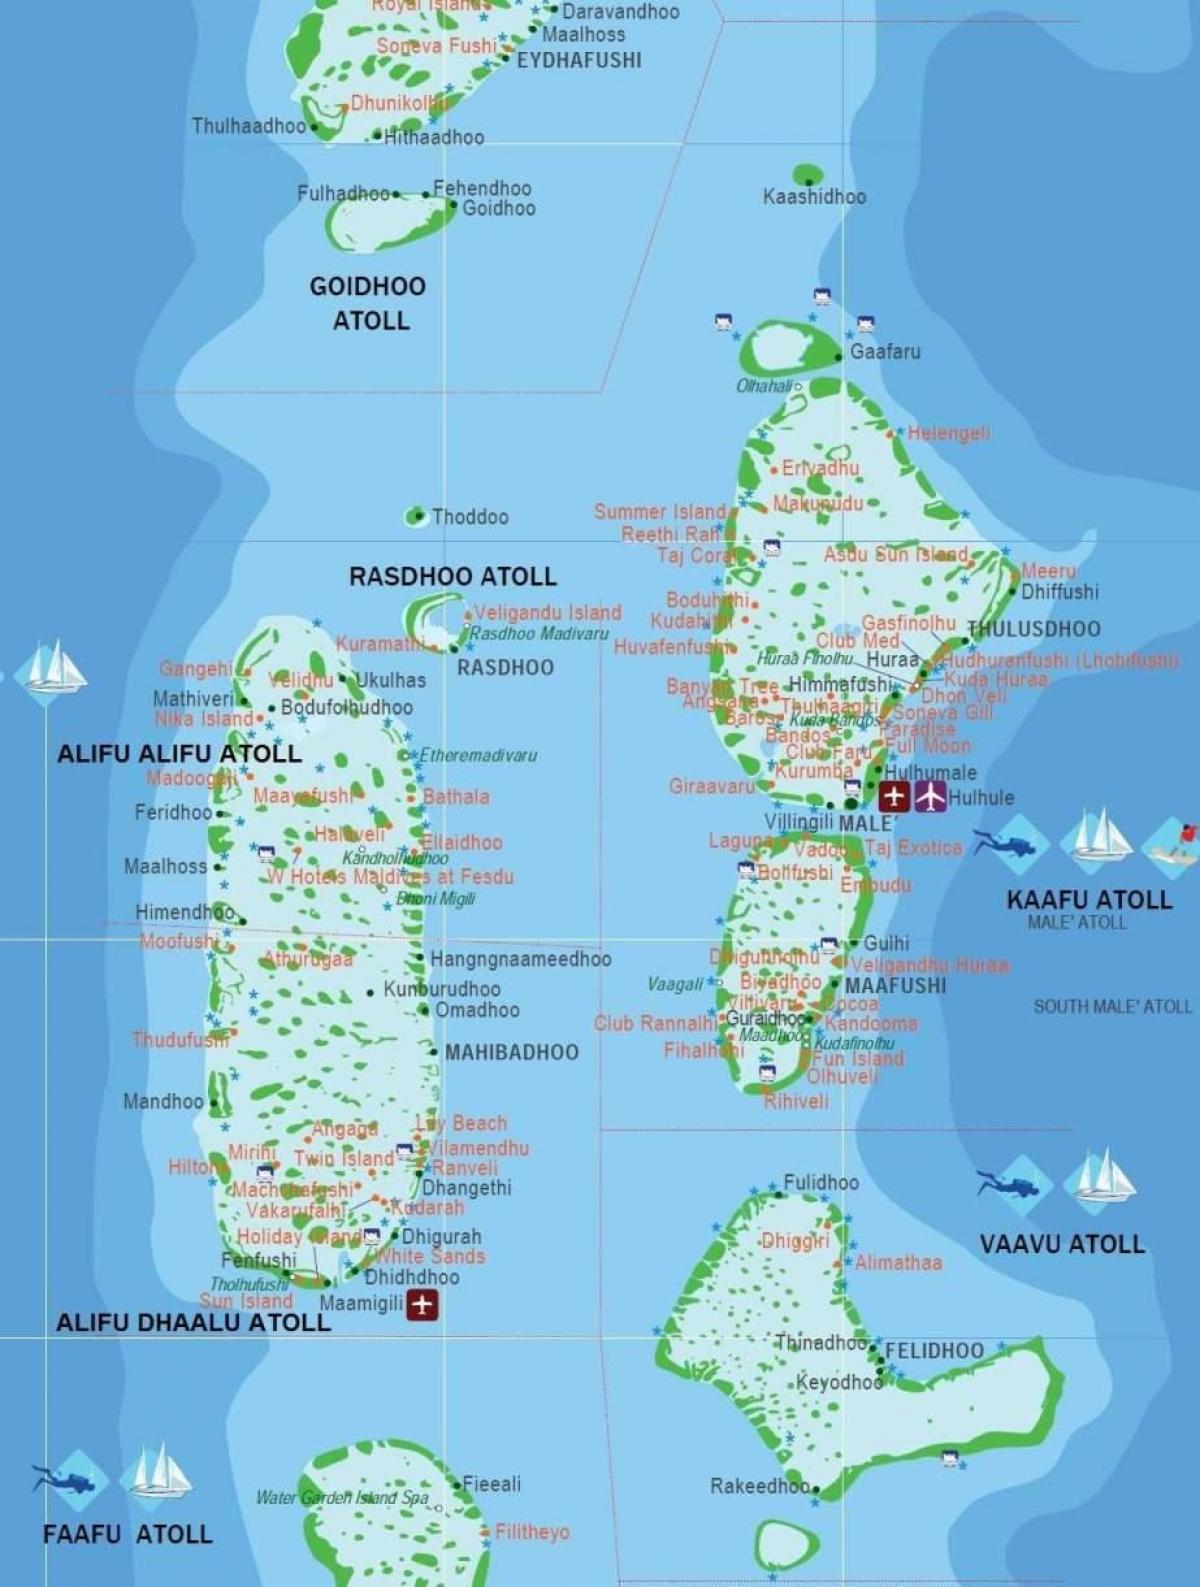 مالدیپ میں ملک دنیا کے نقشے